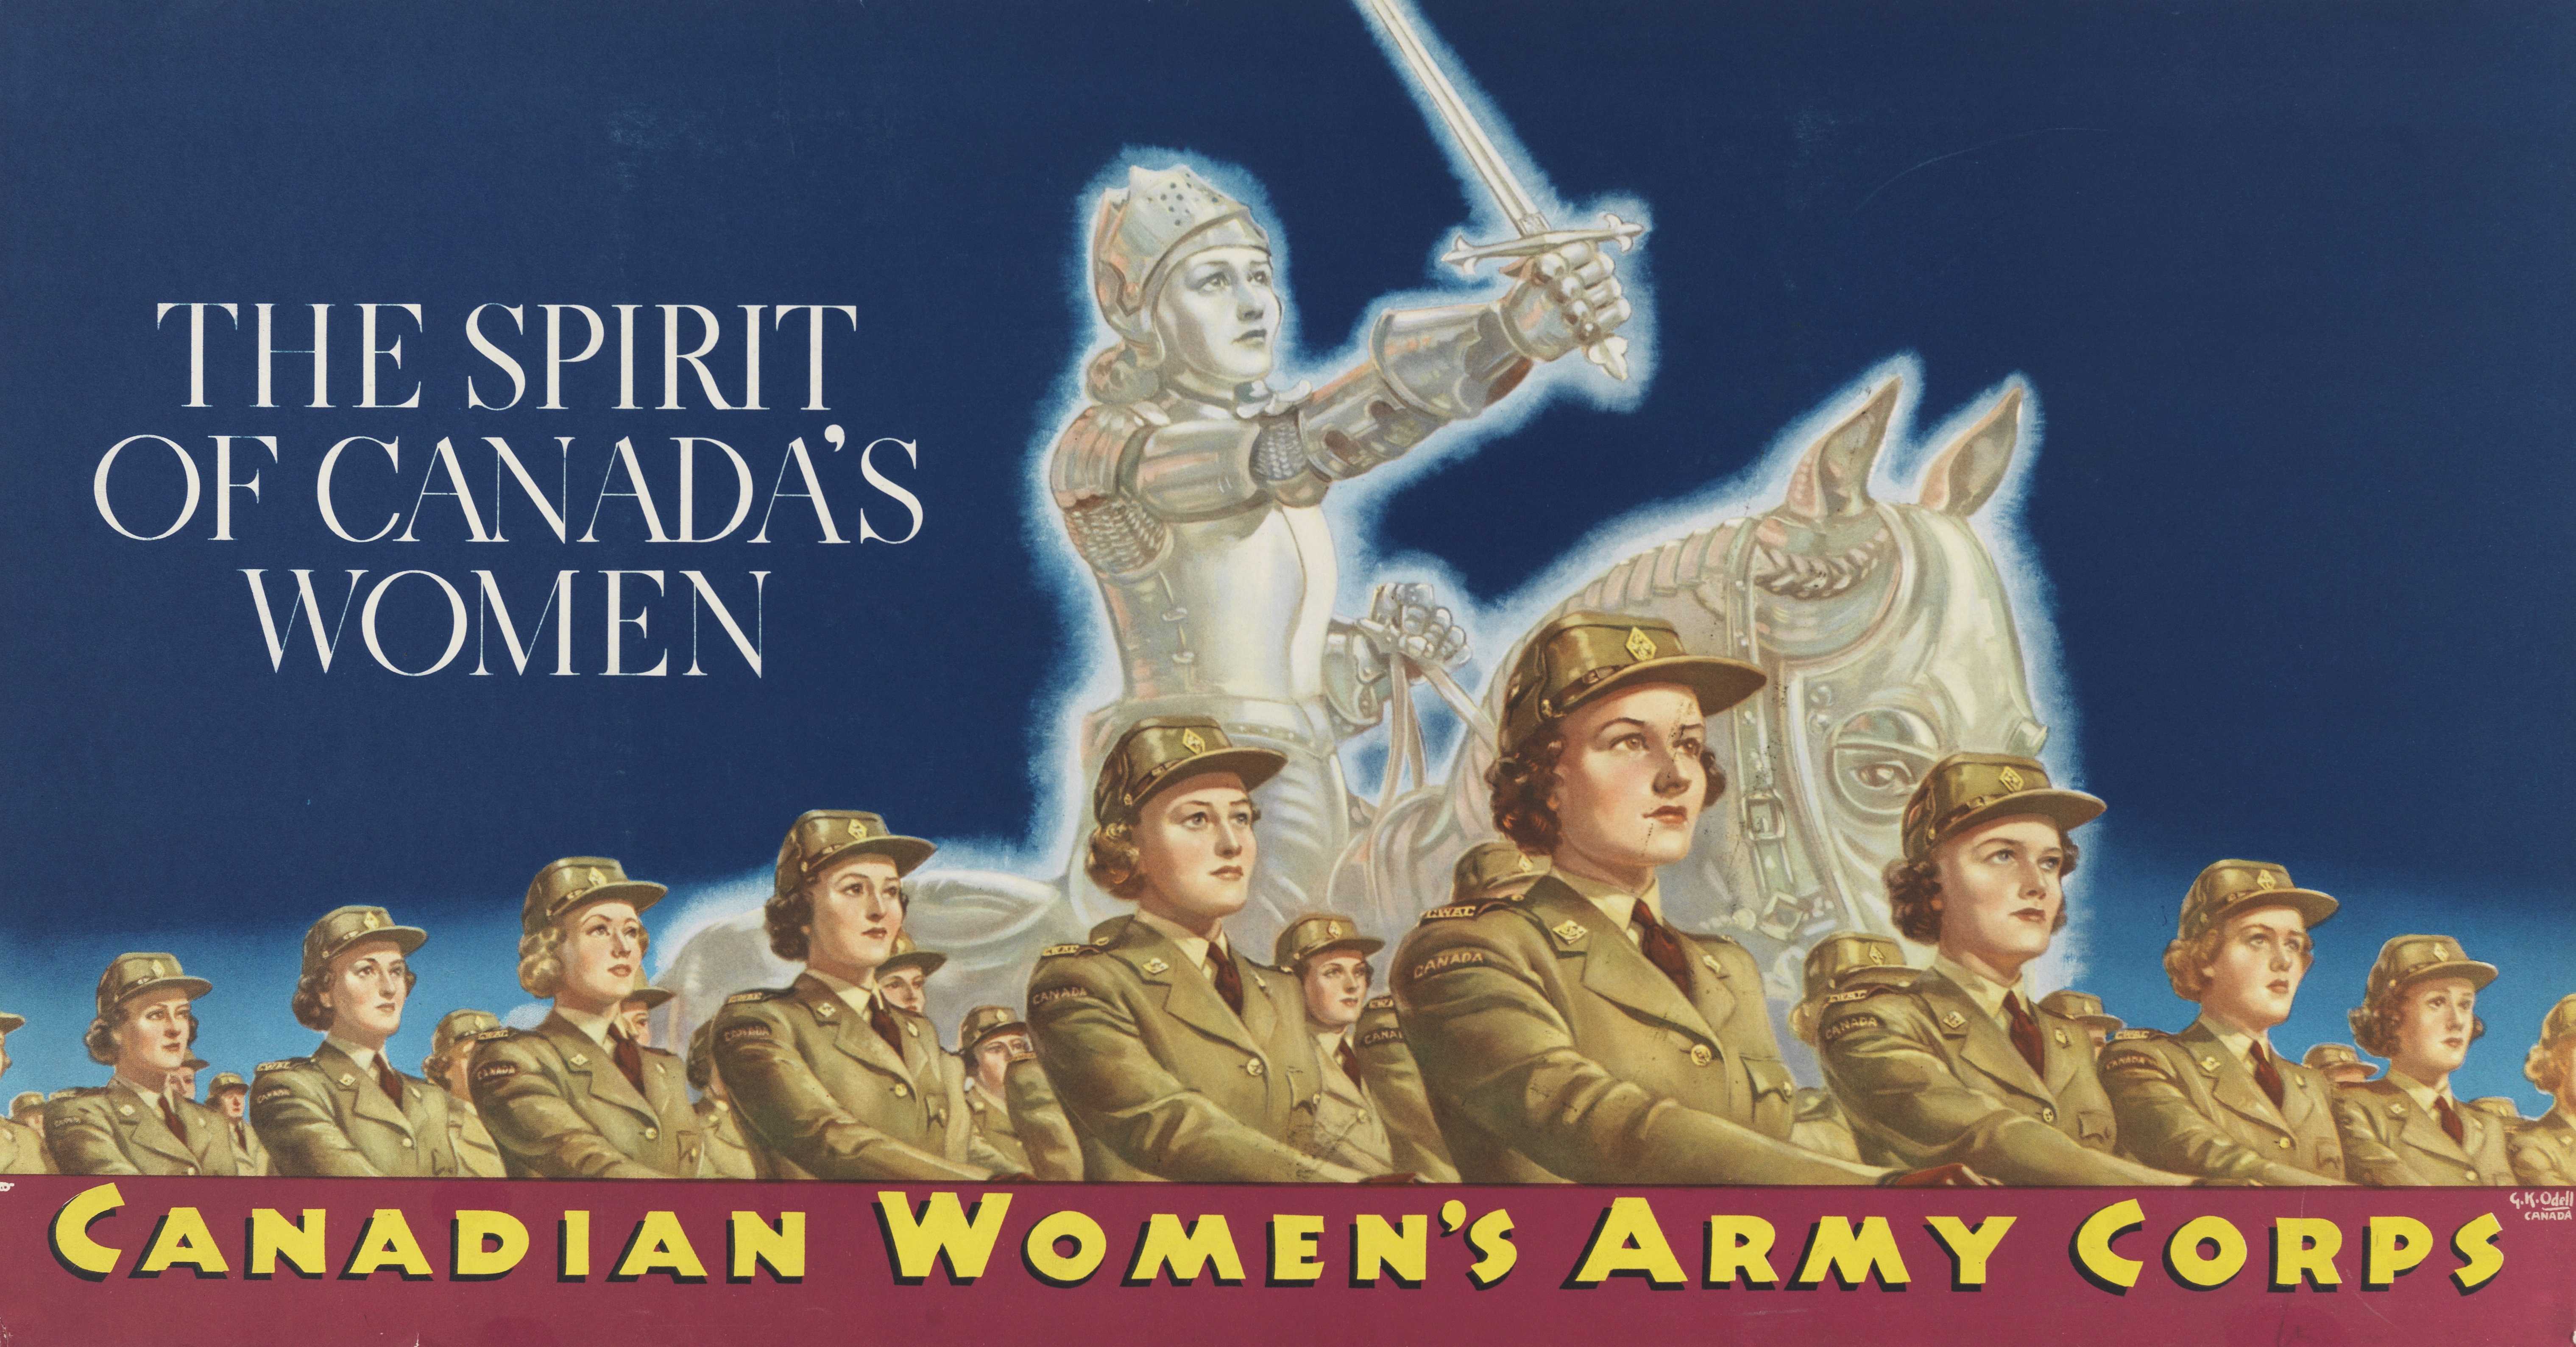 Affiche illustrée en couleur – Des femmes en uniforme défilent en rangées. L’héroïne française Jeanne d’Arc apparaît lumineuse derrière elles, à dos de cheval, brandissant son épée vers le ciel.